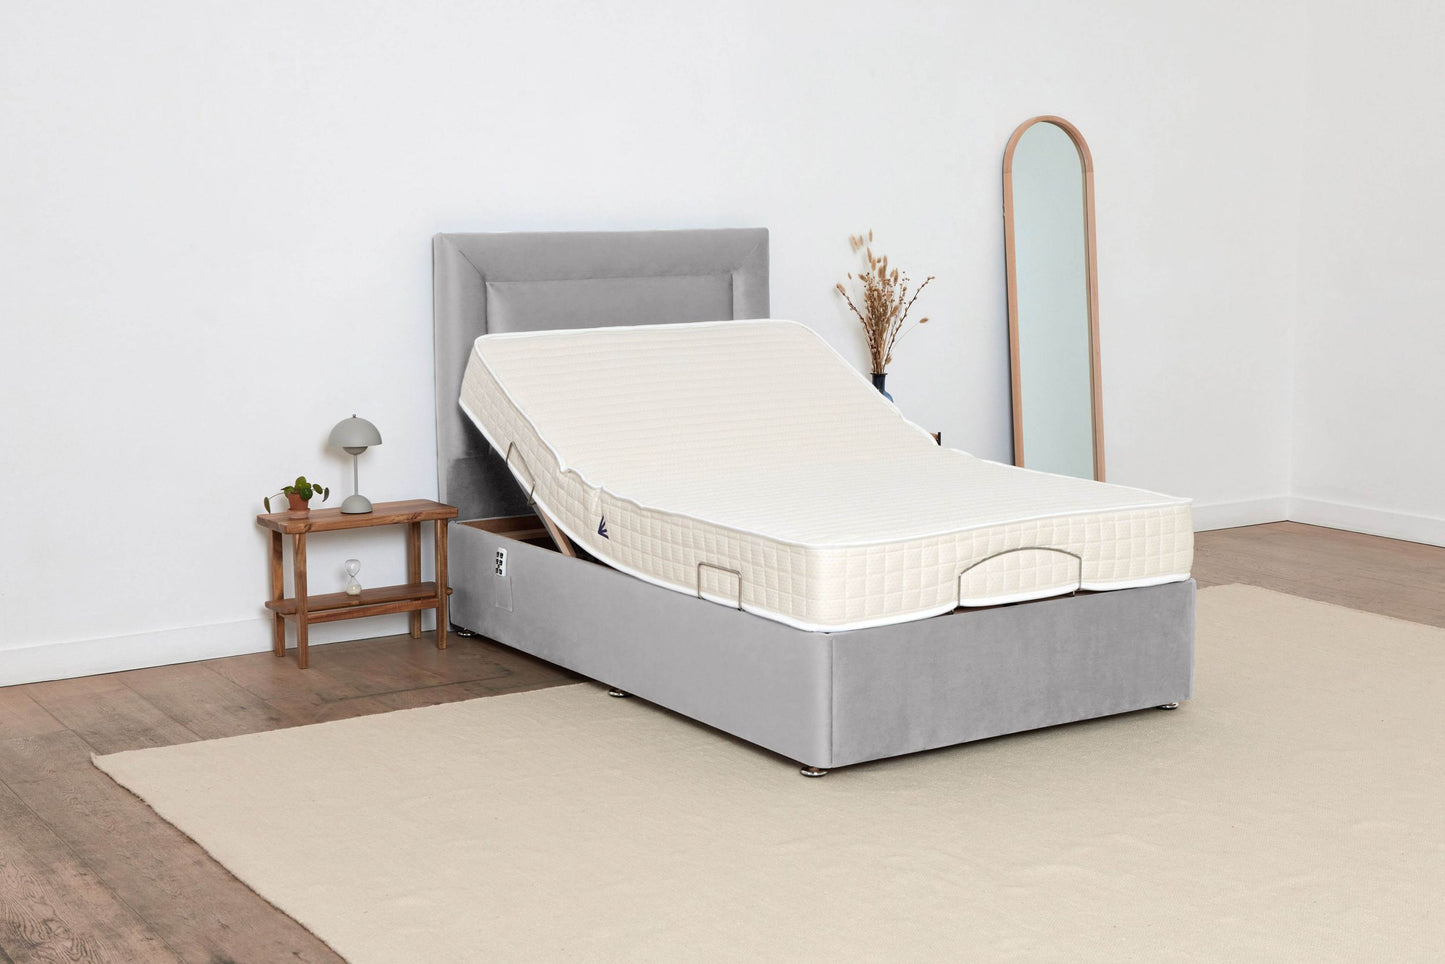 4 Foot Grey Adjustable Bed